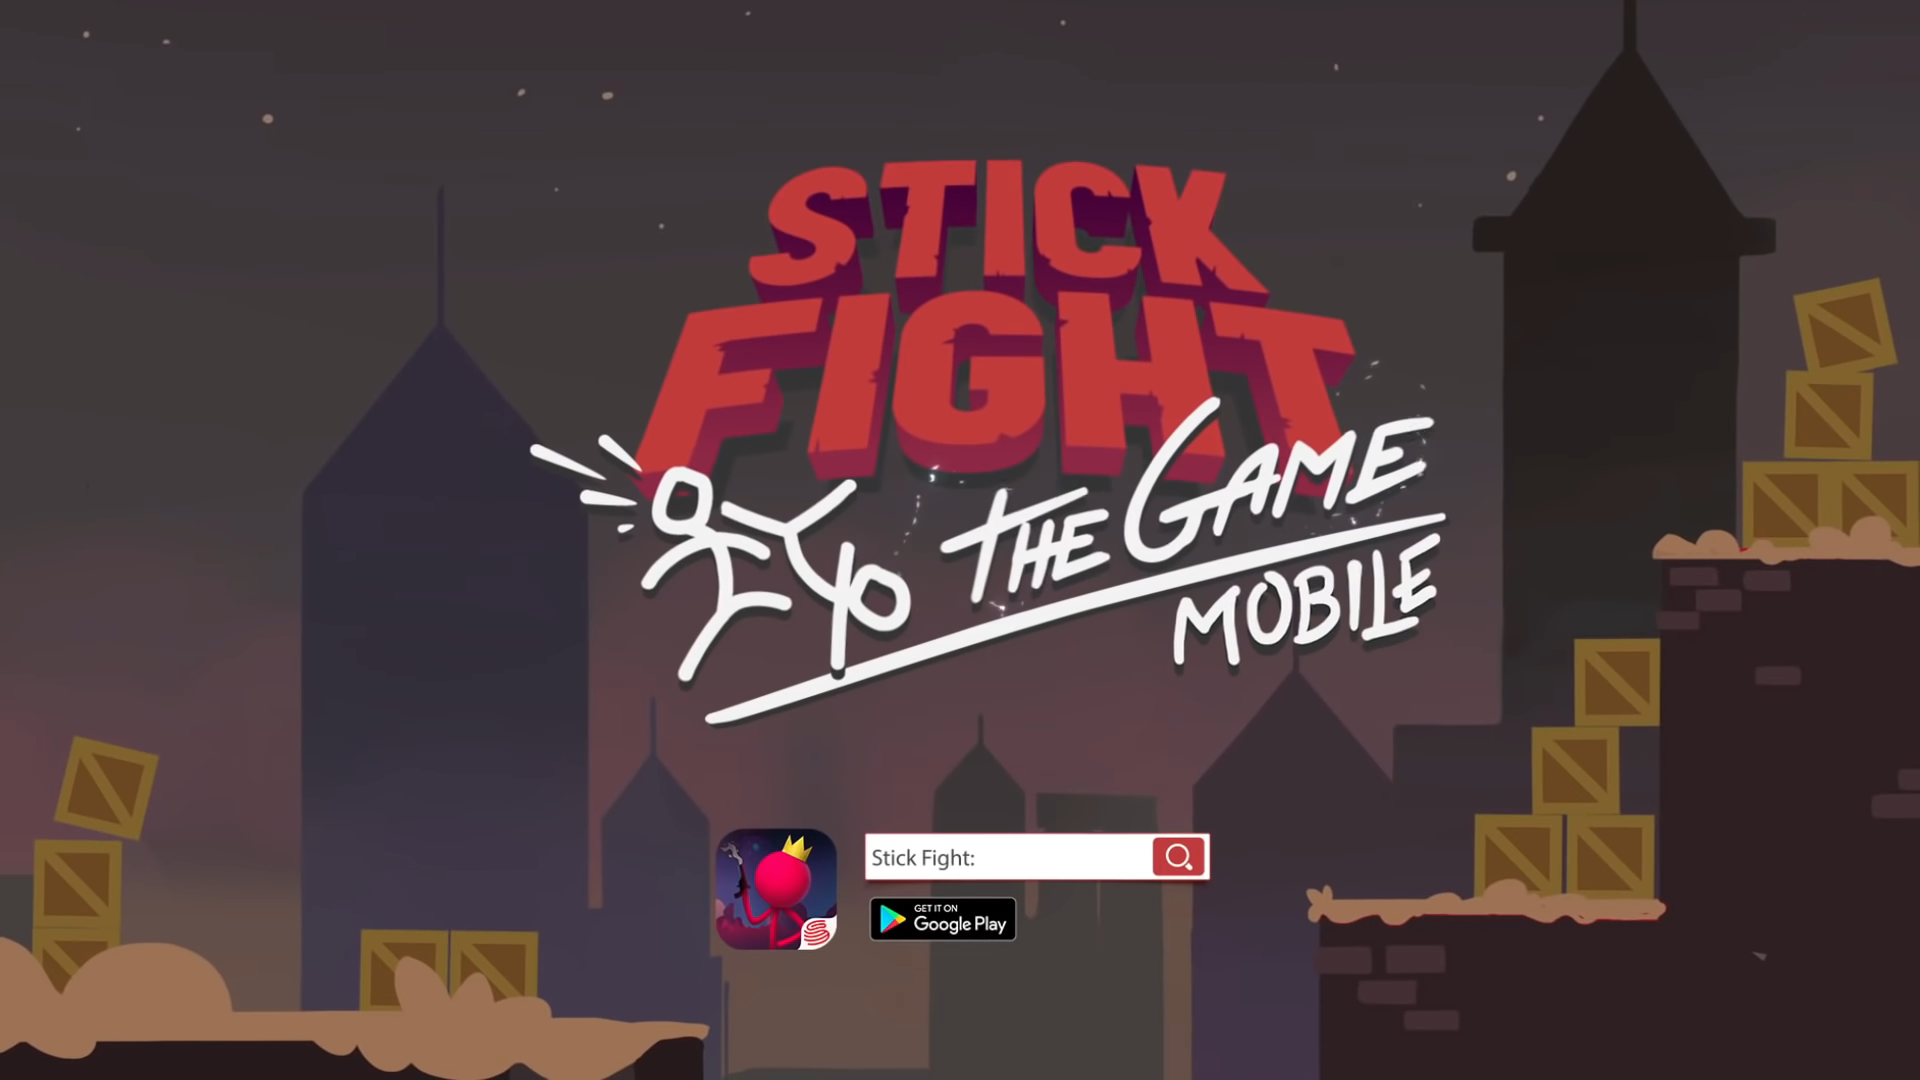 Стик стим. Стик файт. Stick Fight: the game. Stickfightthegame. Stick Fight: the game mobile.